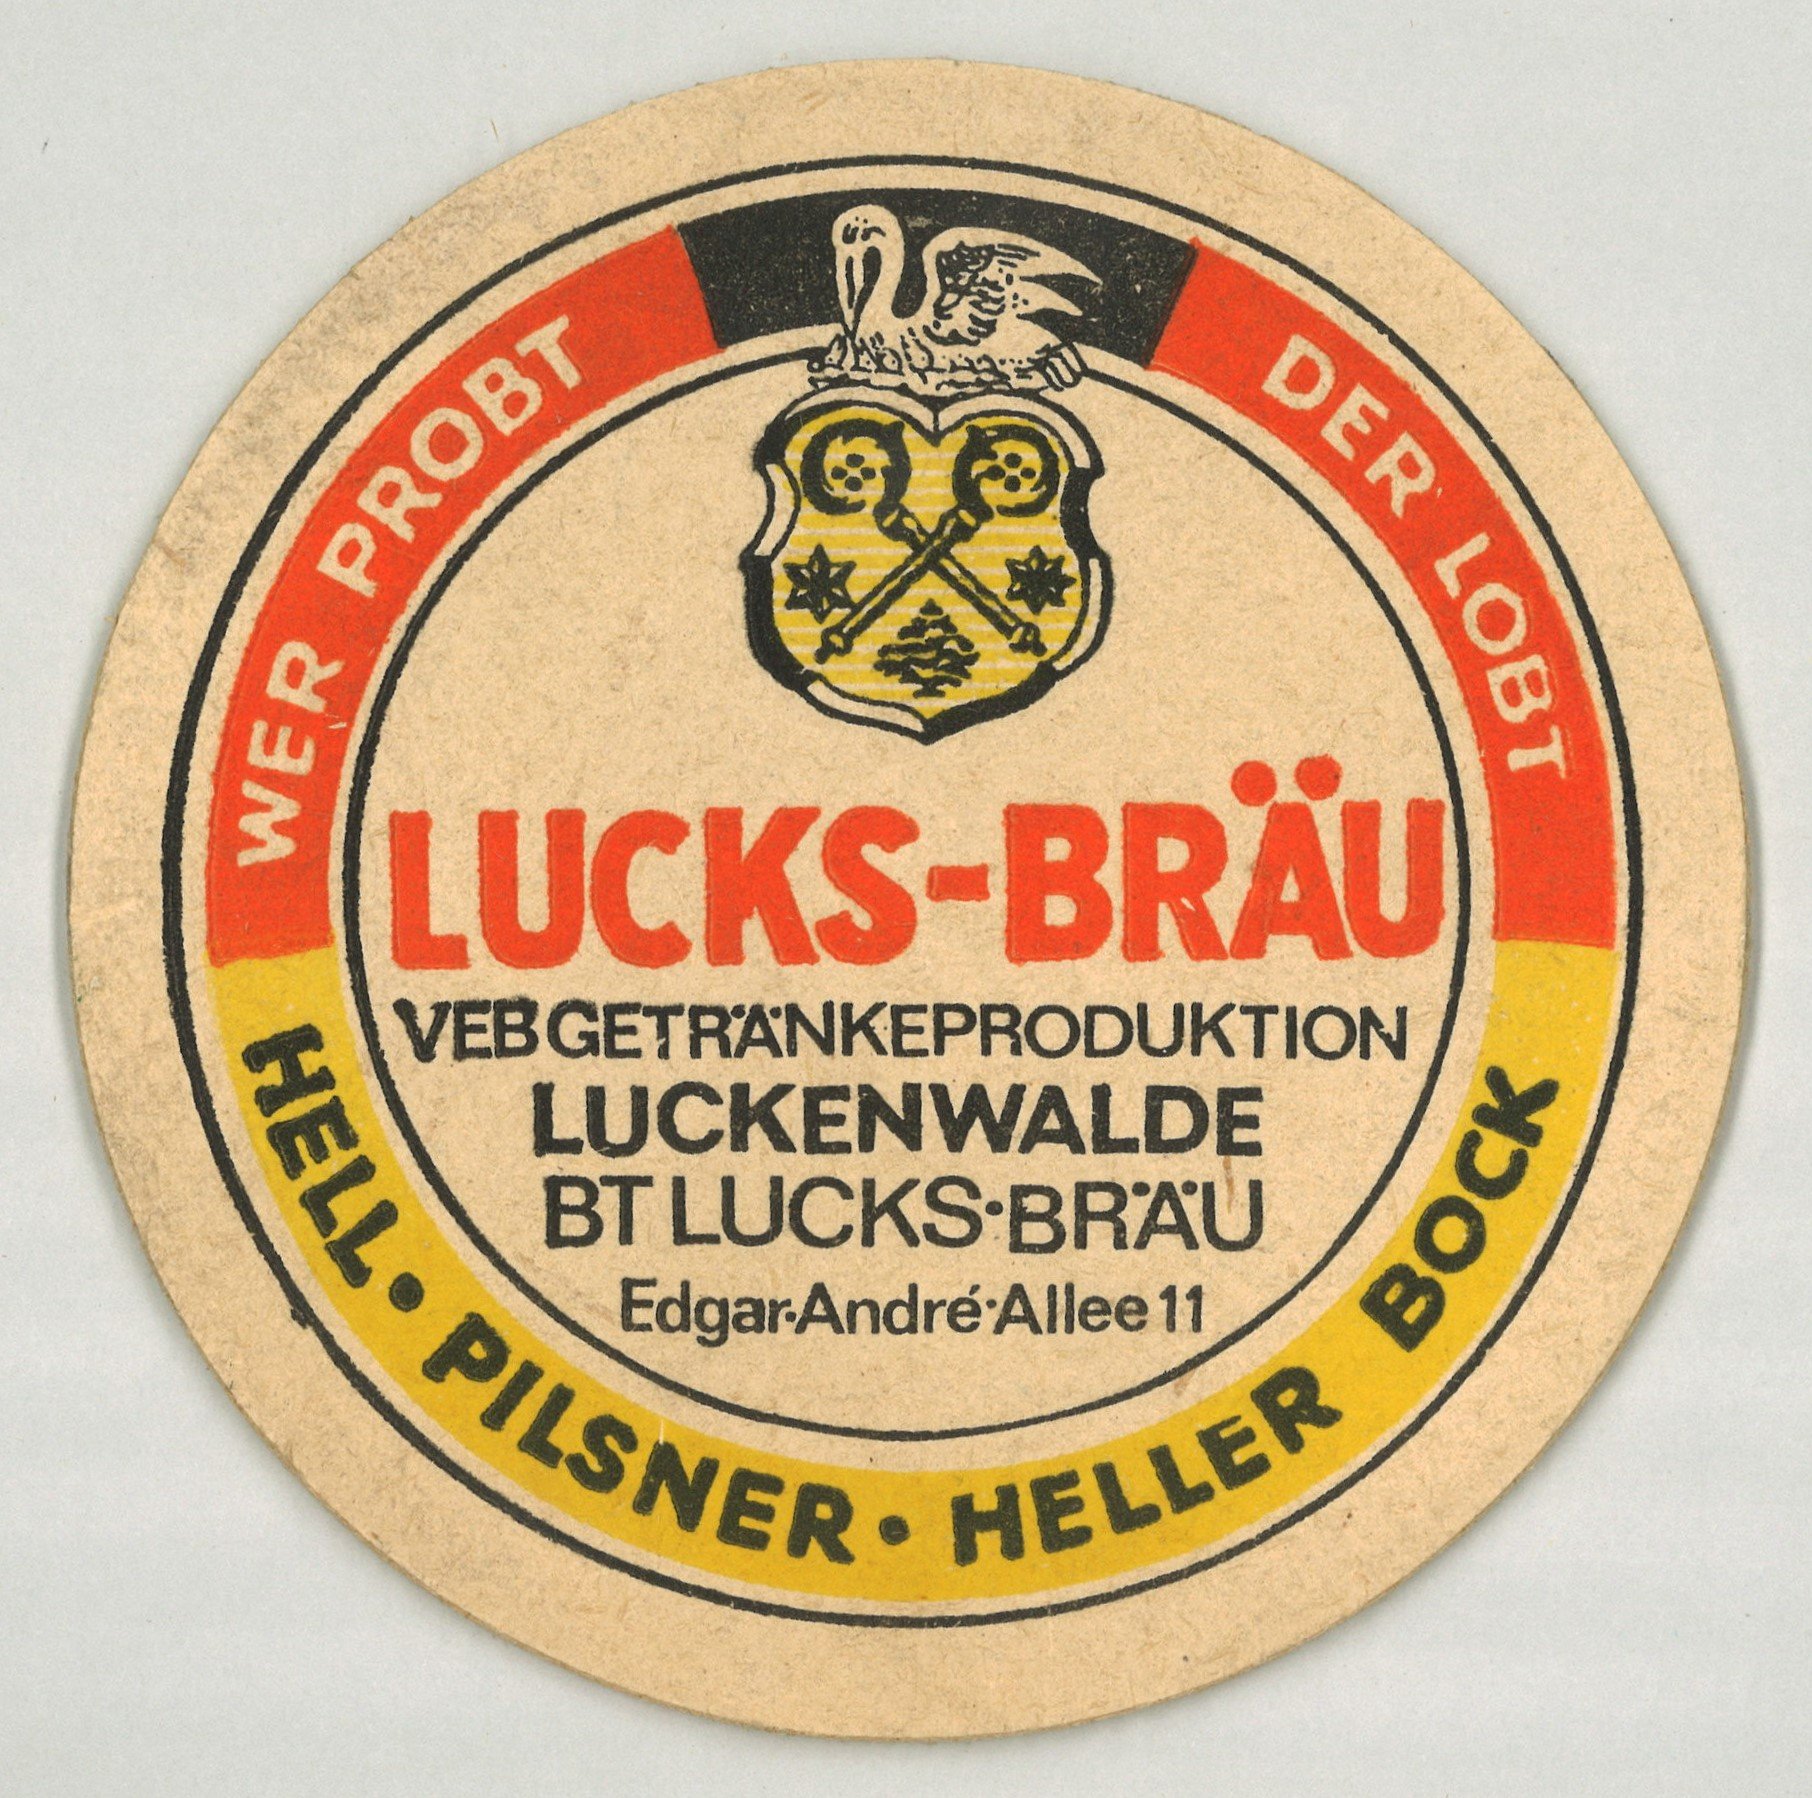 Luckenwale: VEB Getränkeproduktion Luckenwalde, Betriebsteil Lucks-Bräu (Landesgeschichtliche Vereinigung für die Mark Brandenburg e.V., Archiv CC BY)